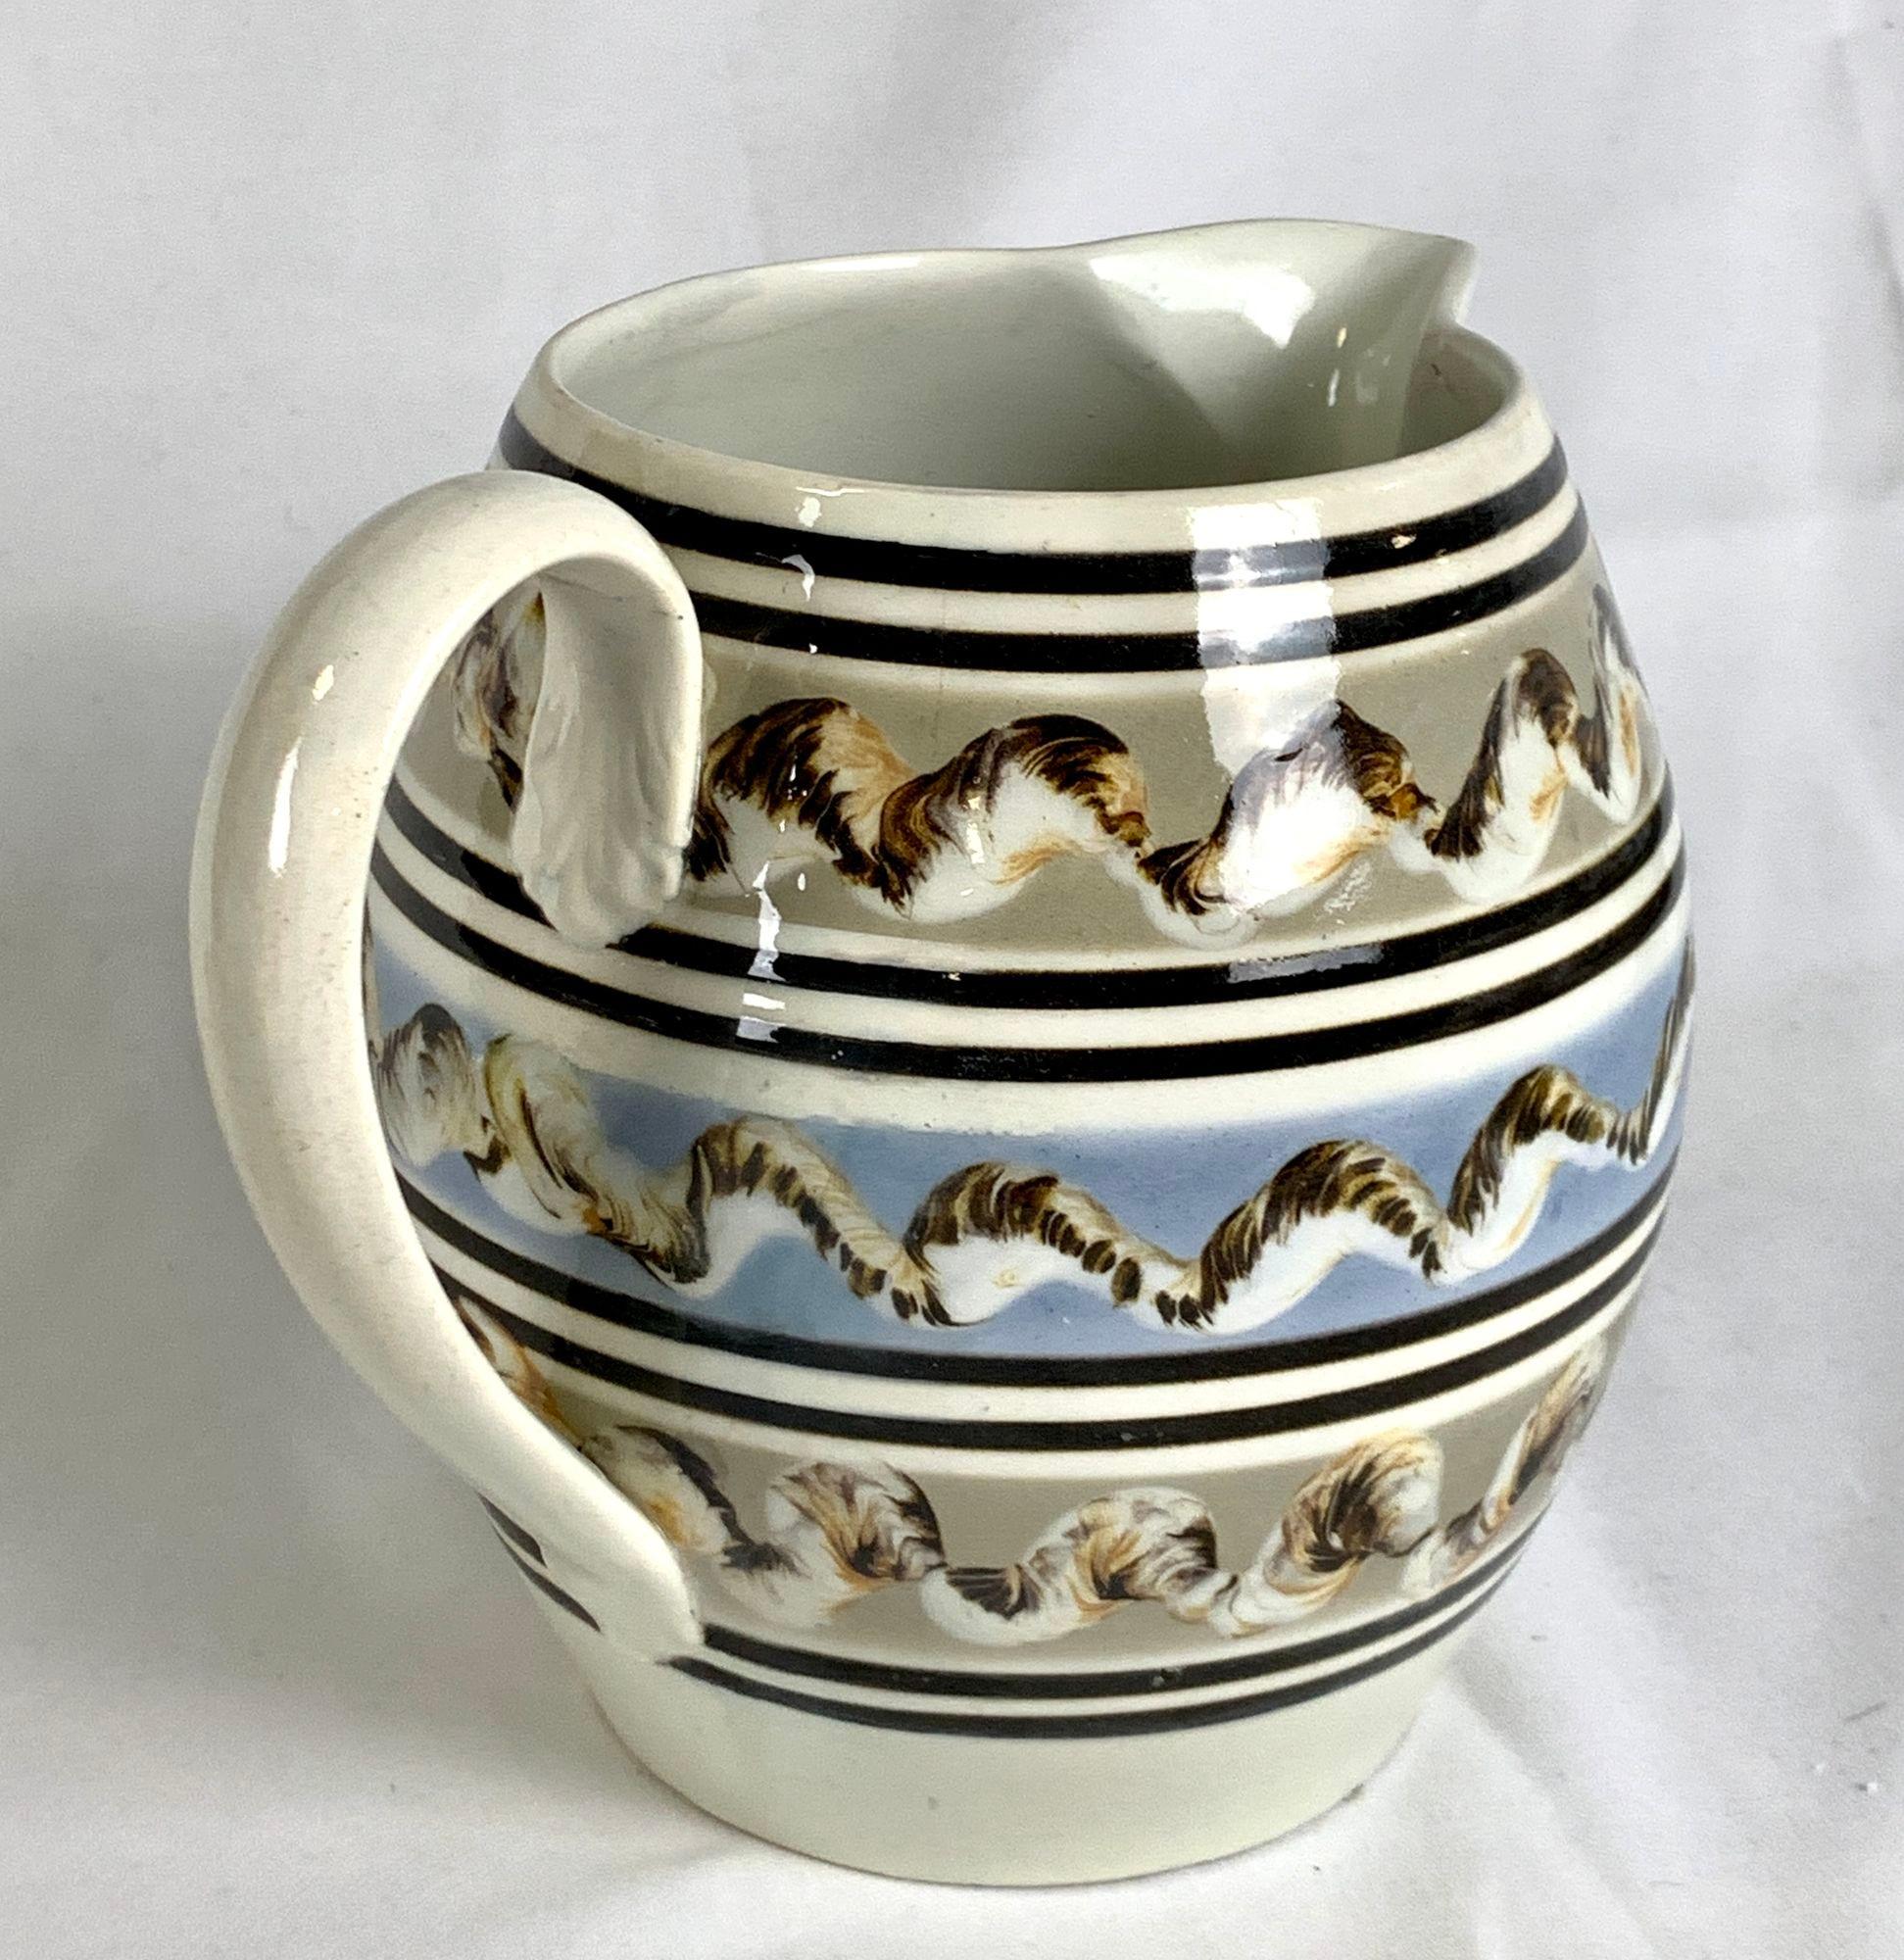 mochaware pottery